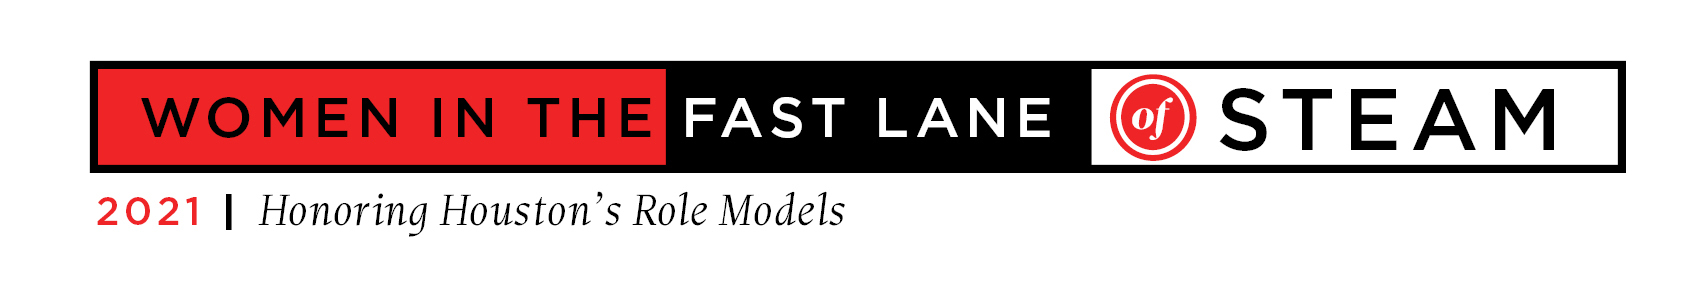 Women in the Fast Lane 2021 Logo